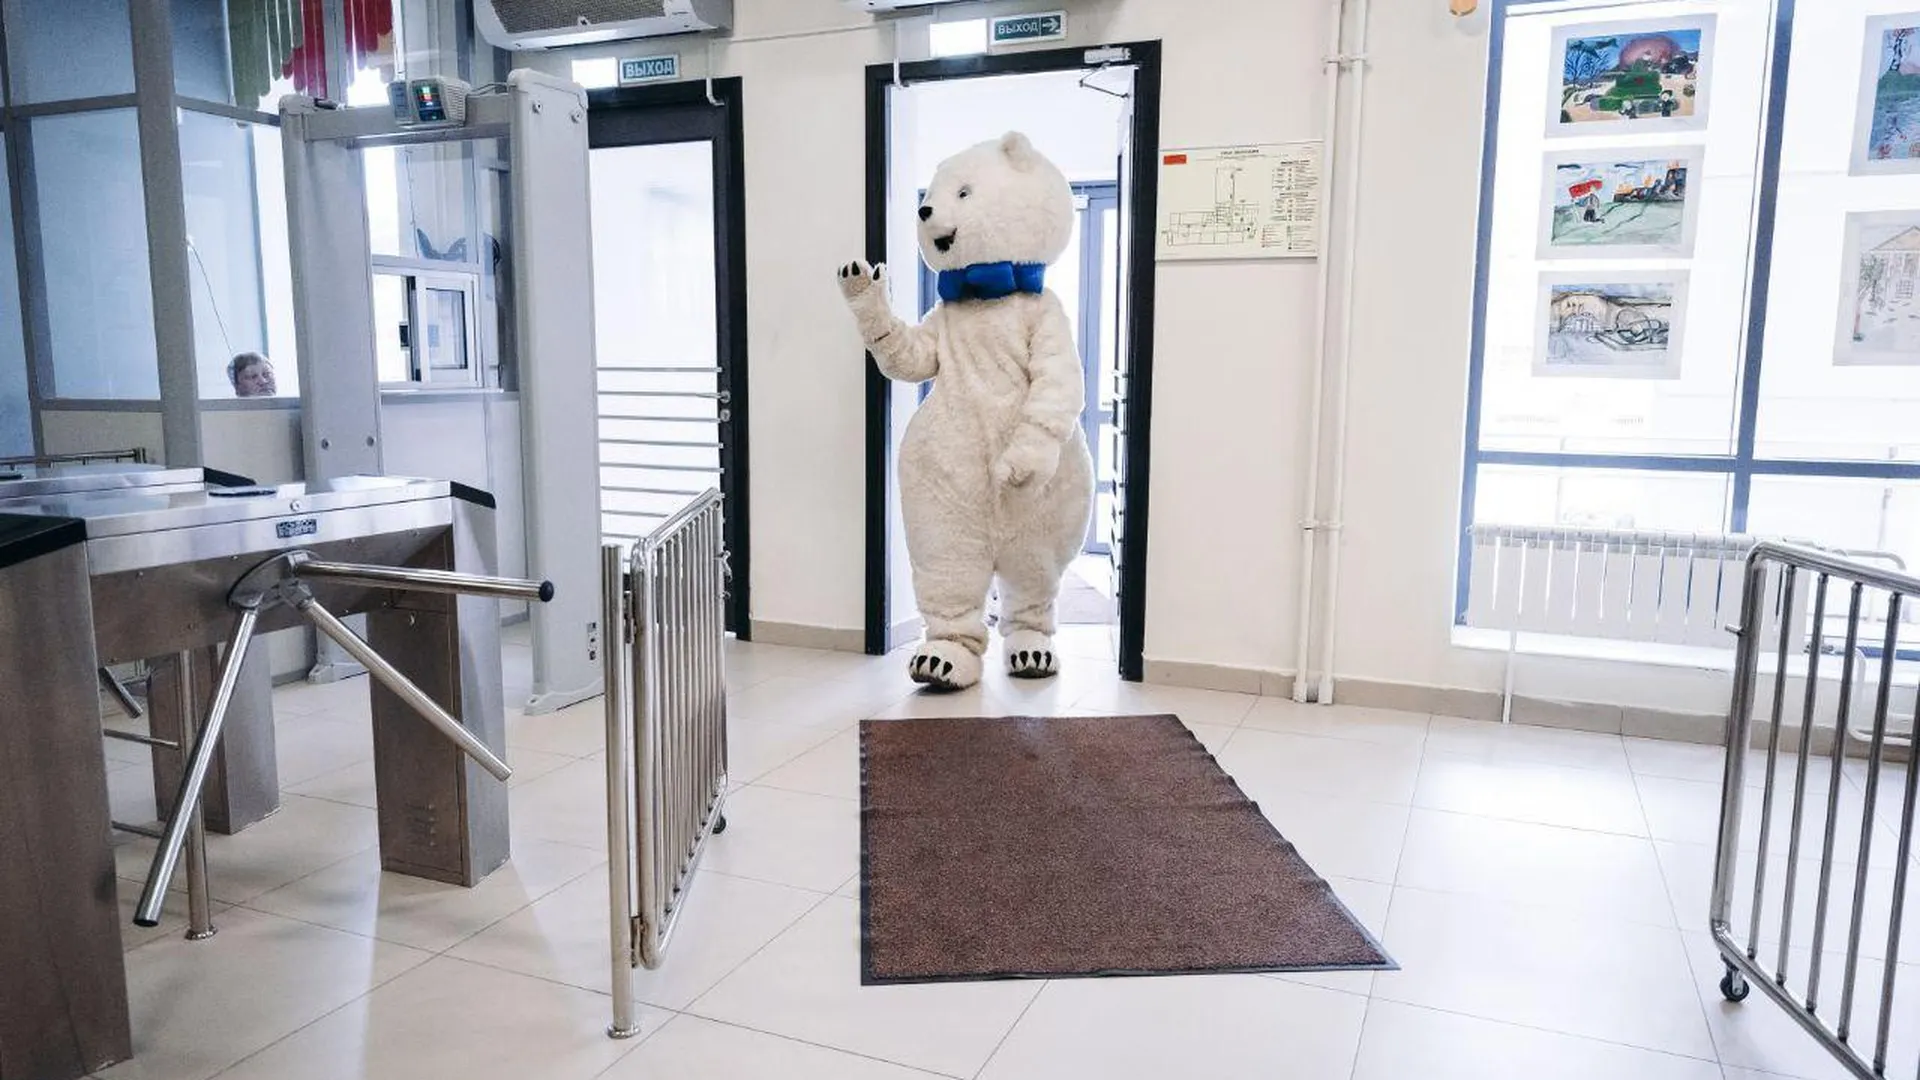 Впервые голосующий белый медведь пришел на избирательный участок в Щелкове